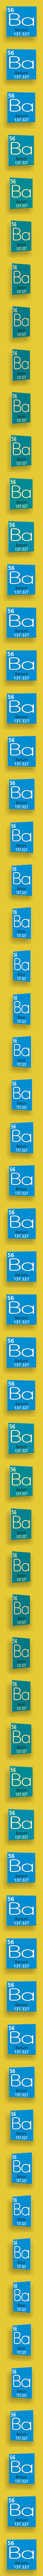 Barium element #56/118